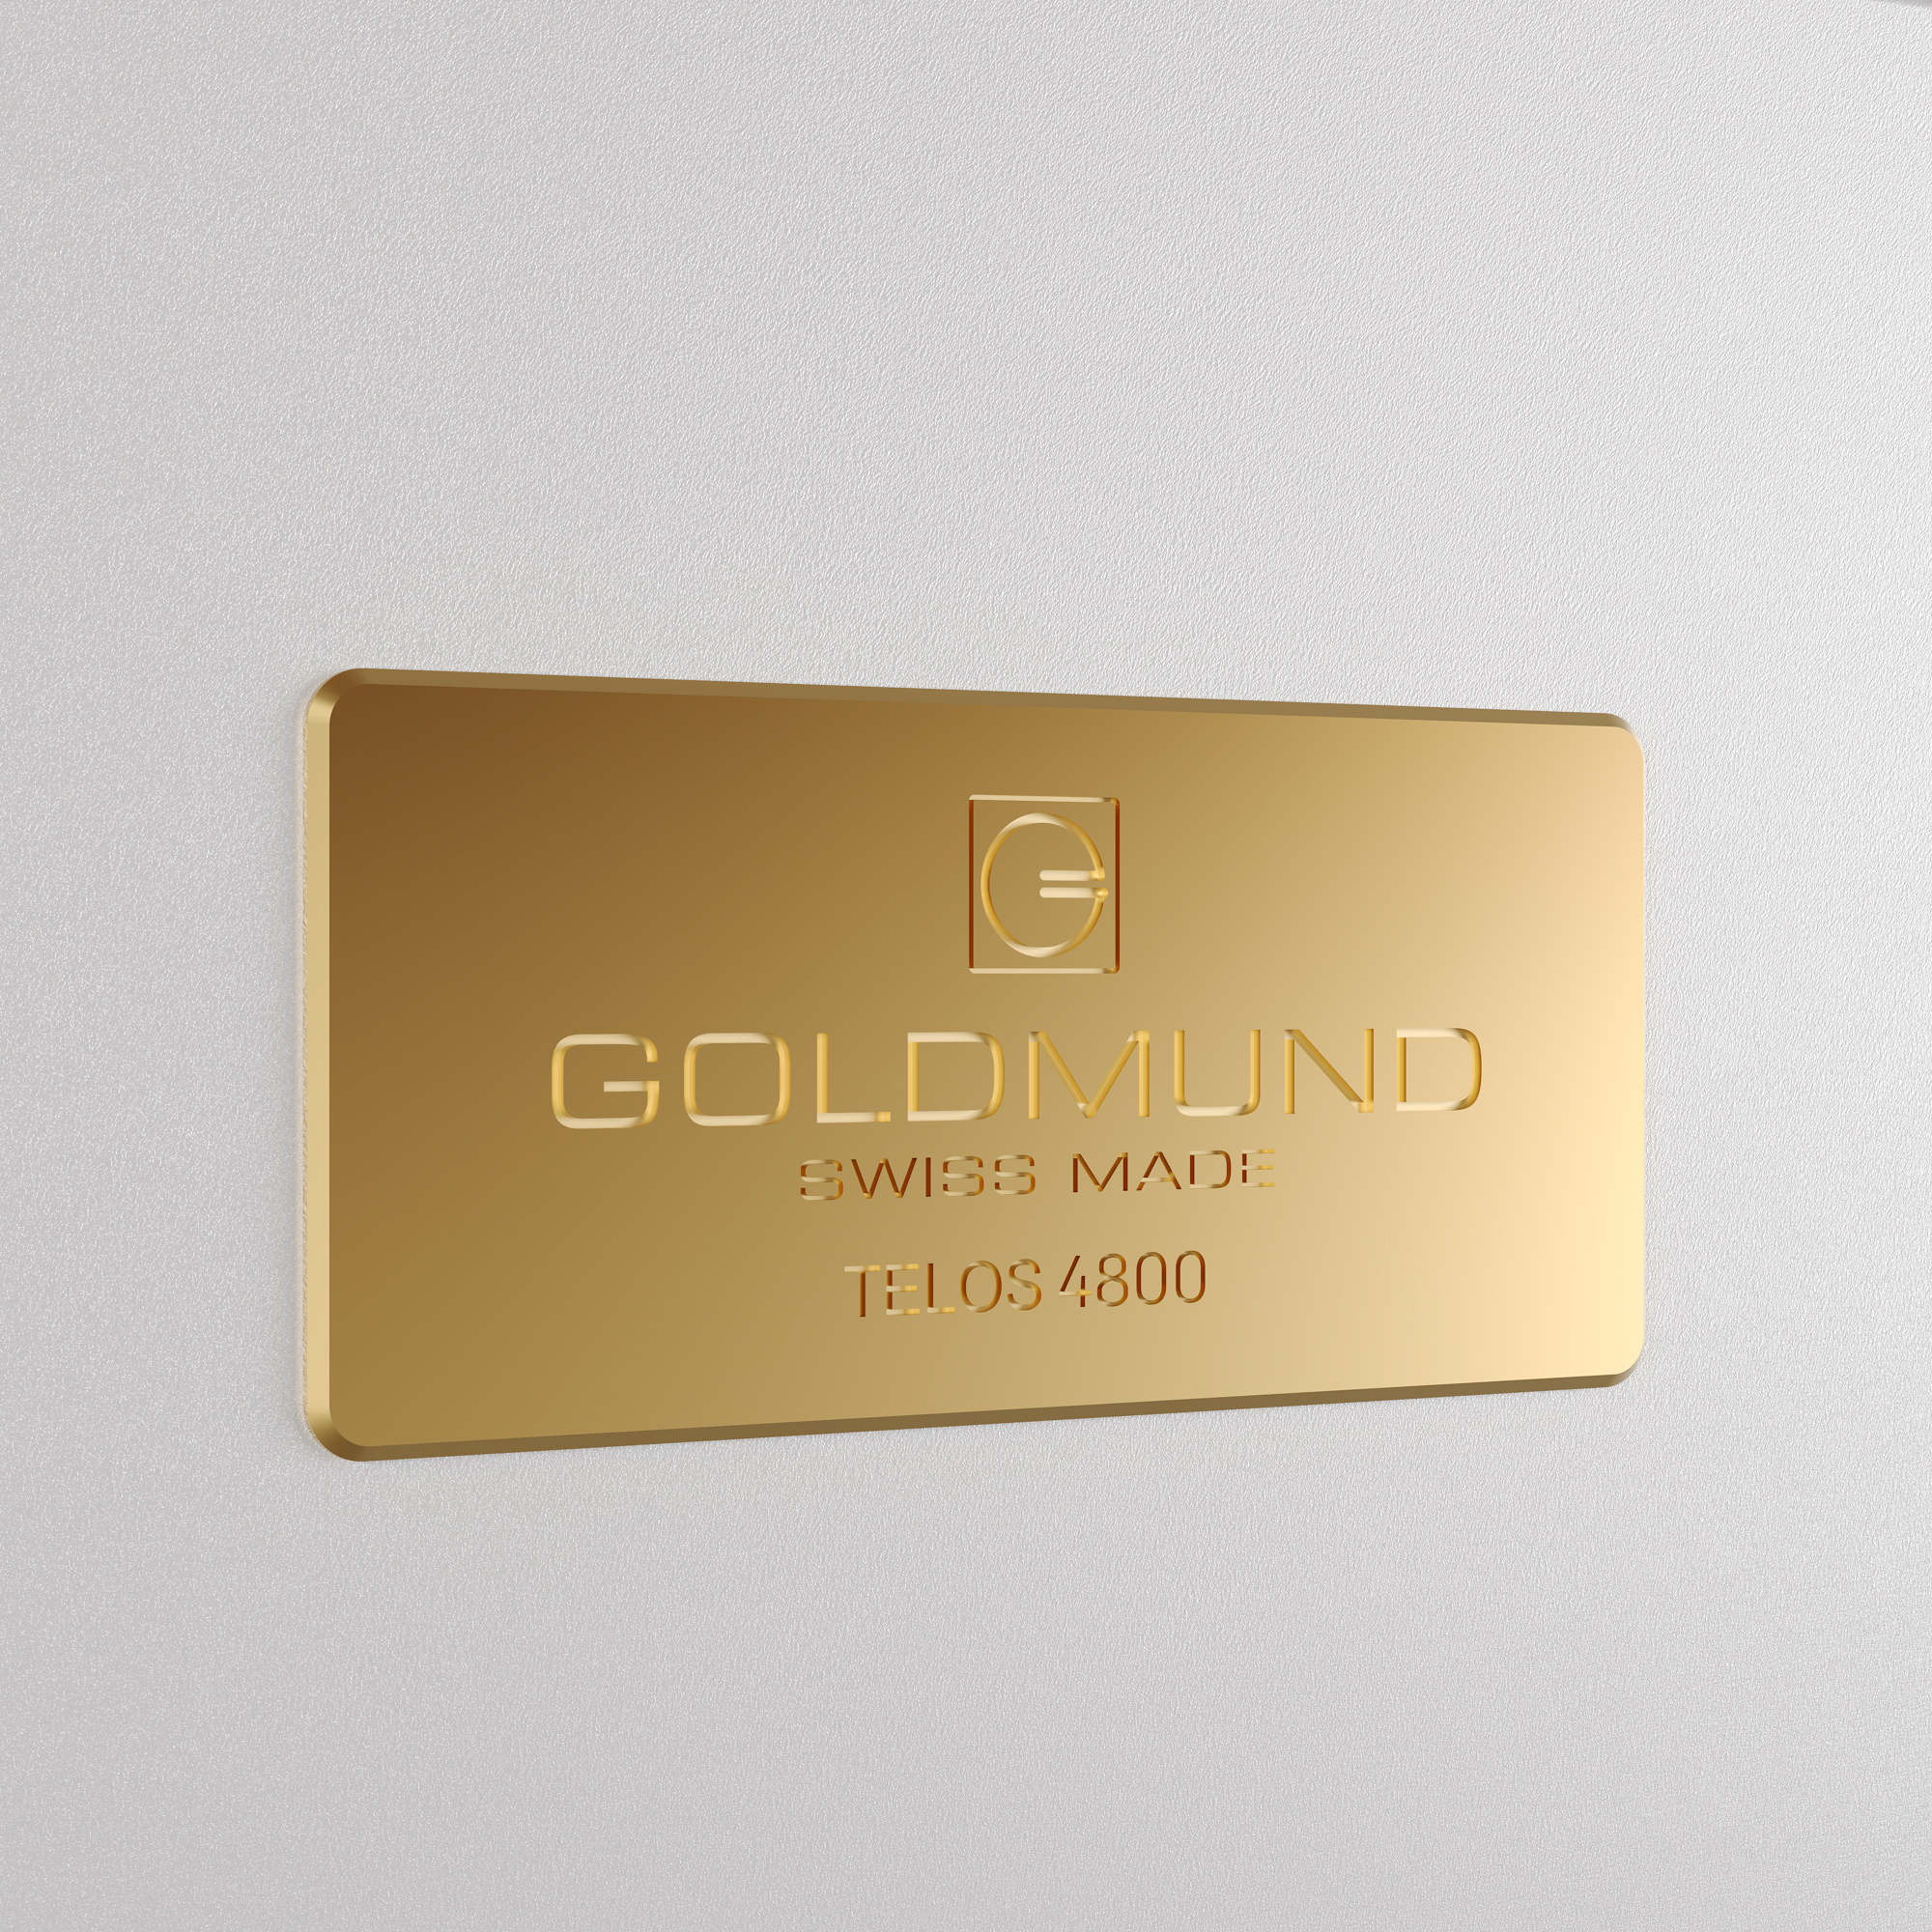 Logo Goldmund và tên thiết bị Telos 4800 được khắc CNC vô cùng tinh xảo. Ảnh: Goldmund.